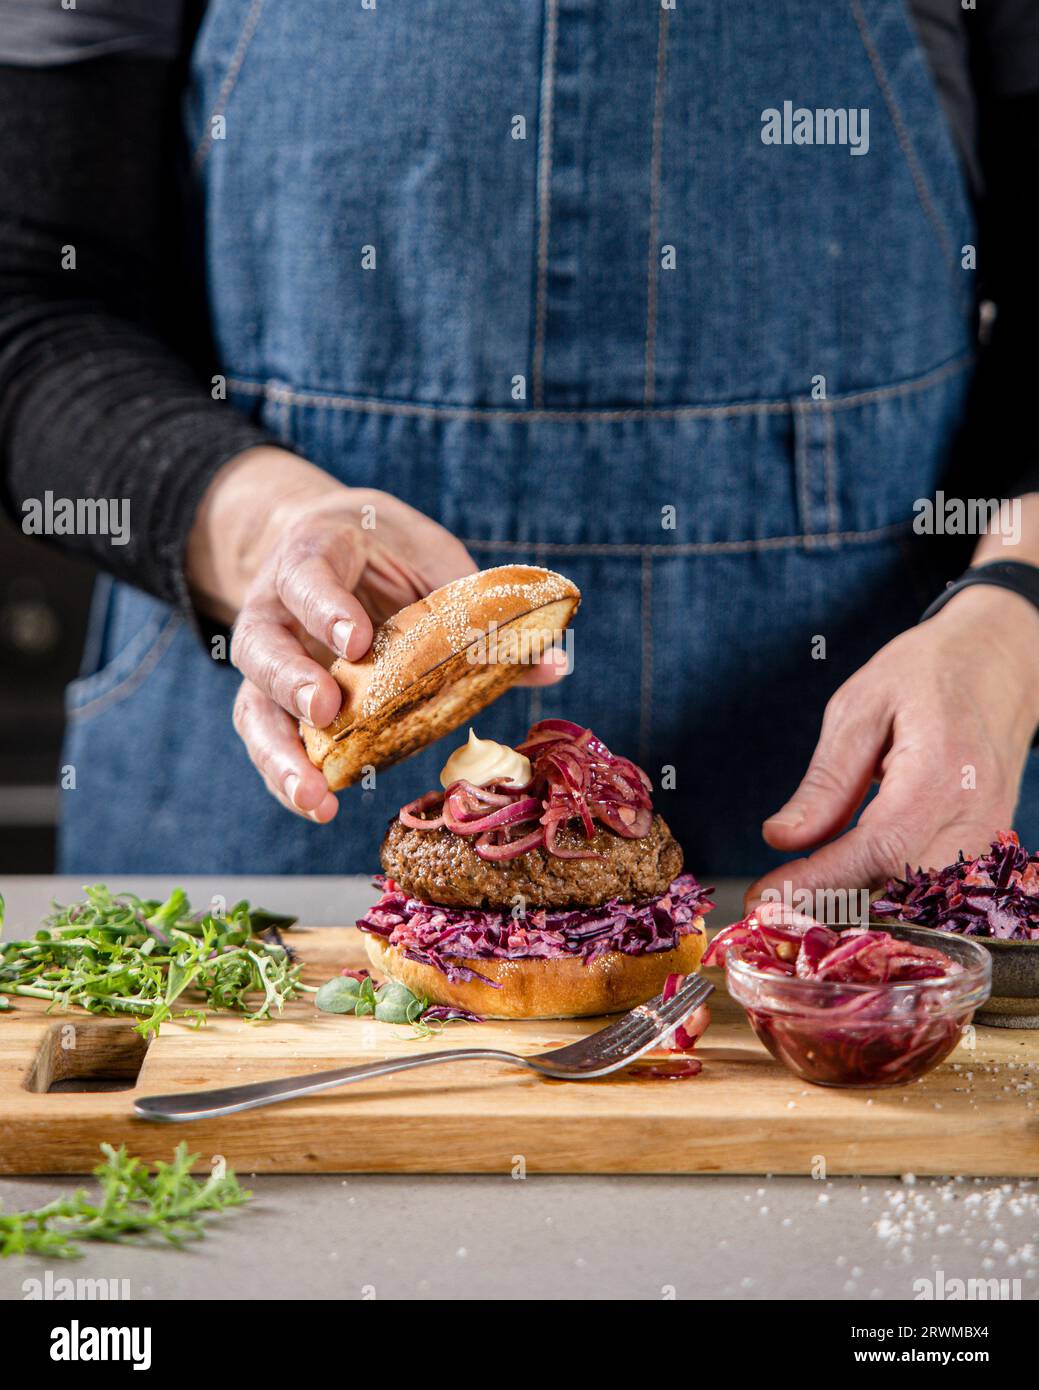 un hamburger maison prend le devant de la scène sur une planche à découper. La planche à découper est ornée de divers légumes et d'un petit bol d'oignons rouges marinés. Banque D'Images